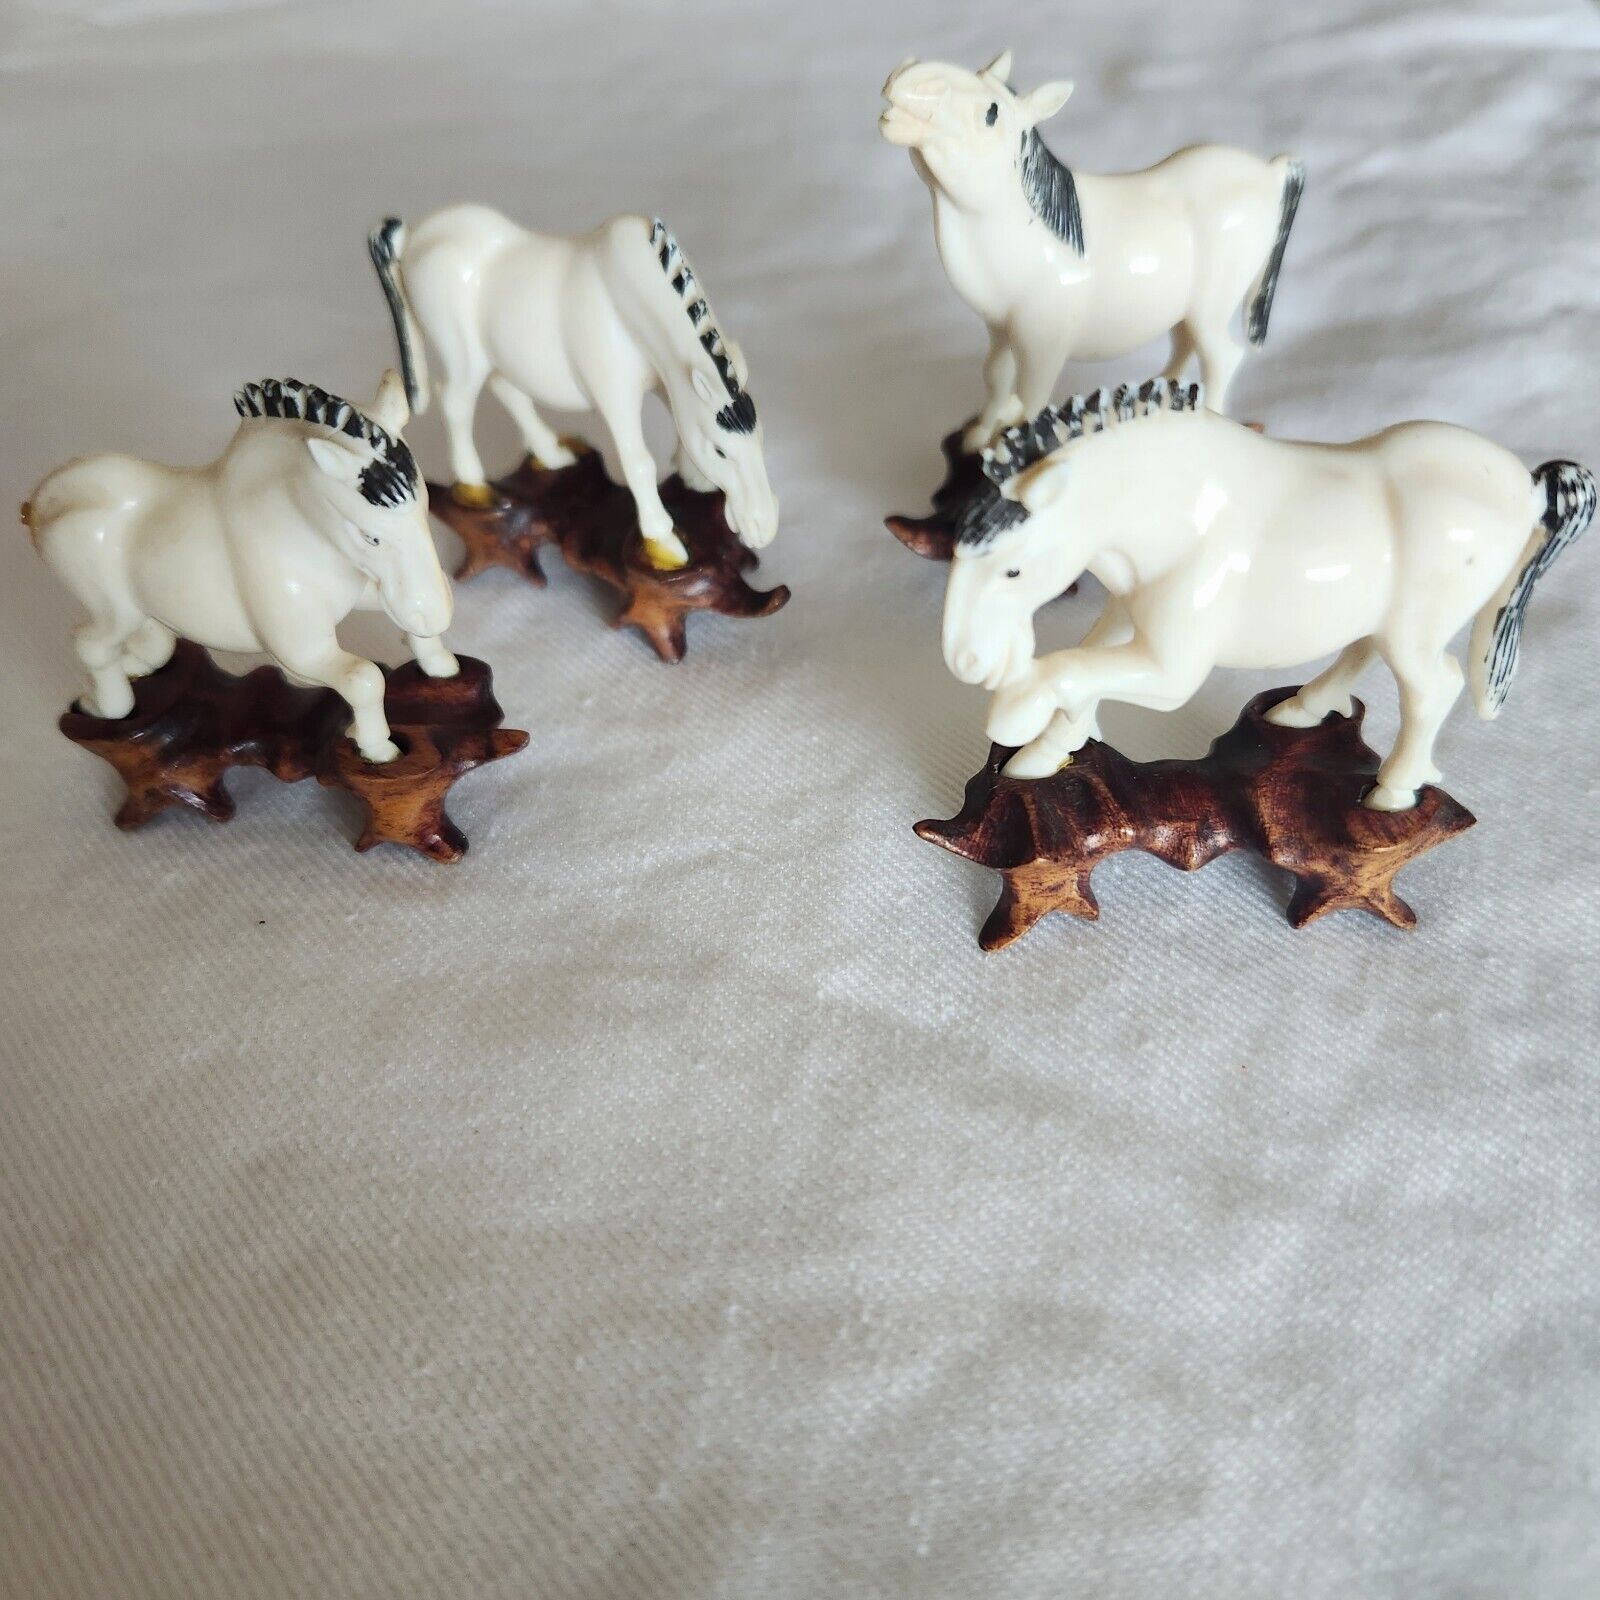 4 Miniature Chinese Horses On Wood Base Vintage 2